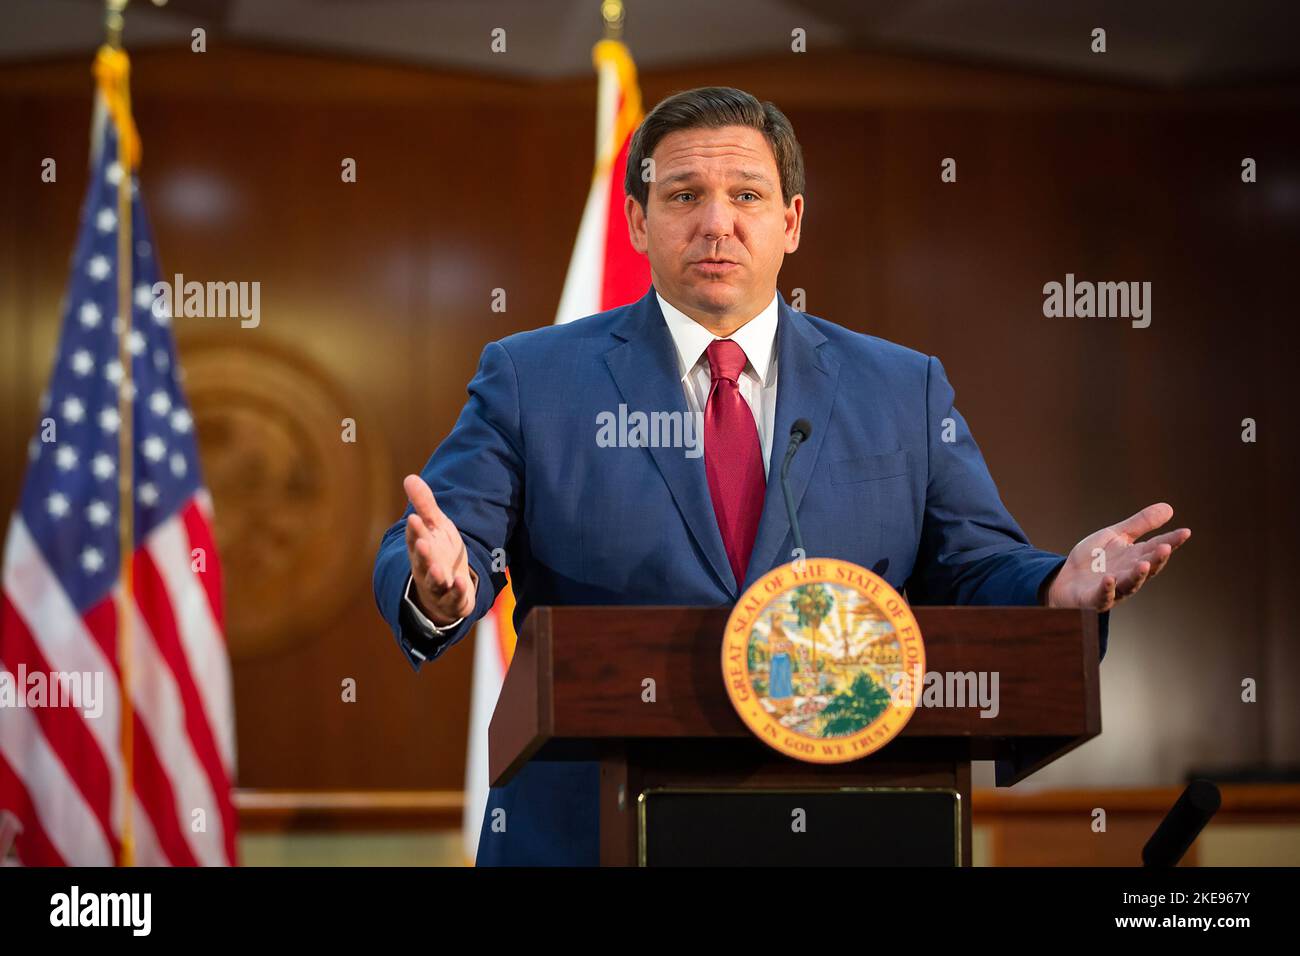 Ron DeSantis, gouverneur de la Floride, s'exprimant lors d'une conférence de presse du Capitole de l'État de Floride sur l'intégrité des élections en Floride sur 4 novembre 2020. (ÉTATS-UNIS) Banque D'Images